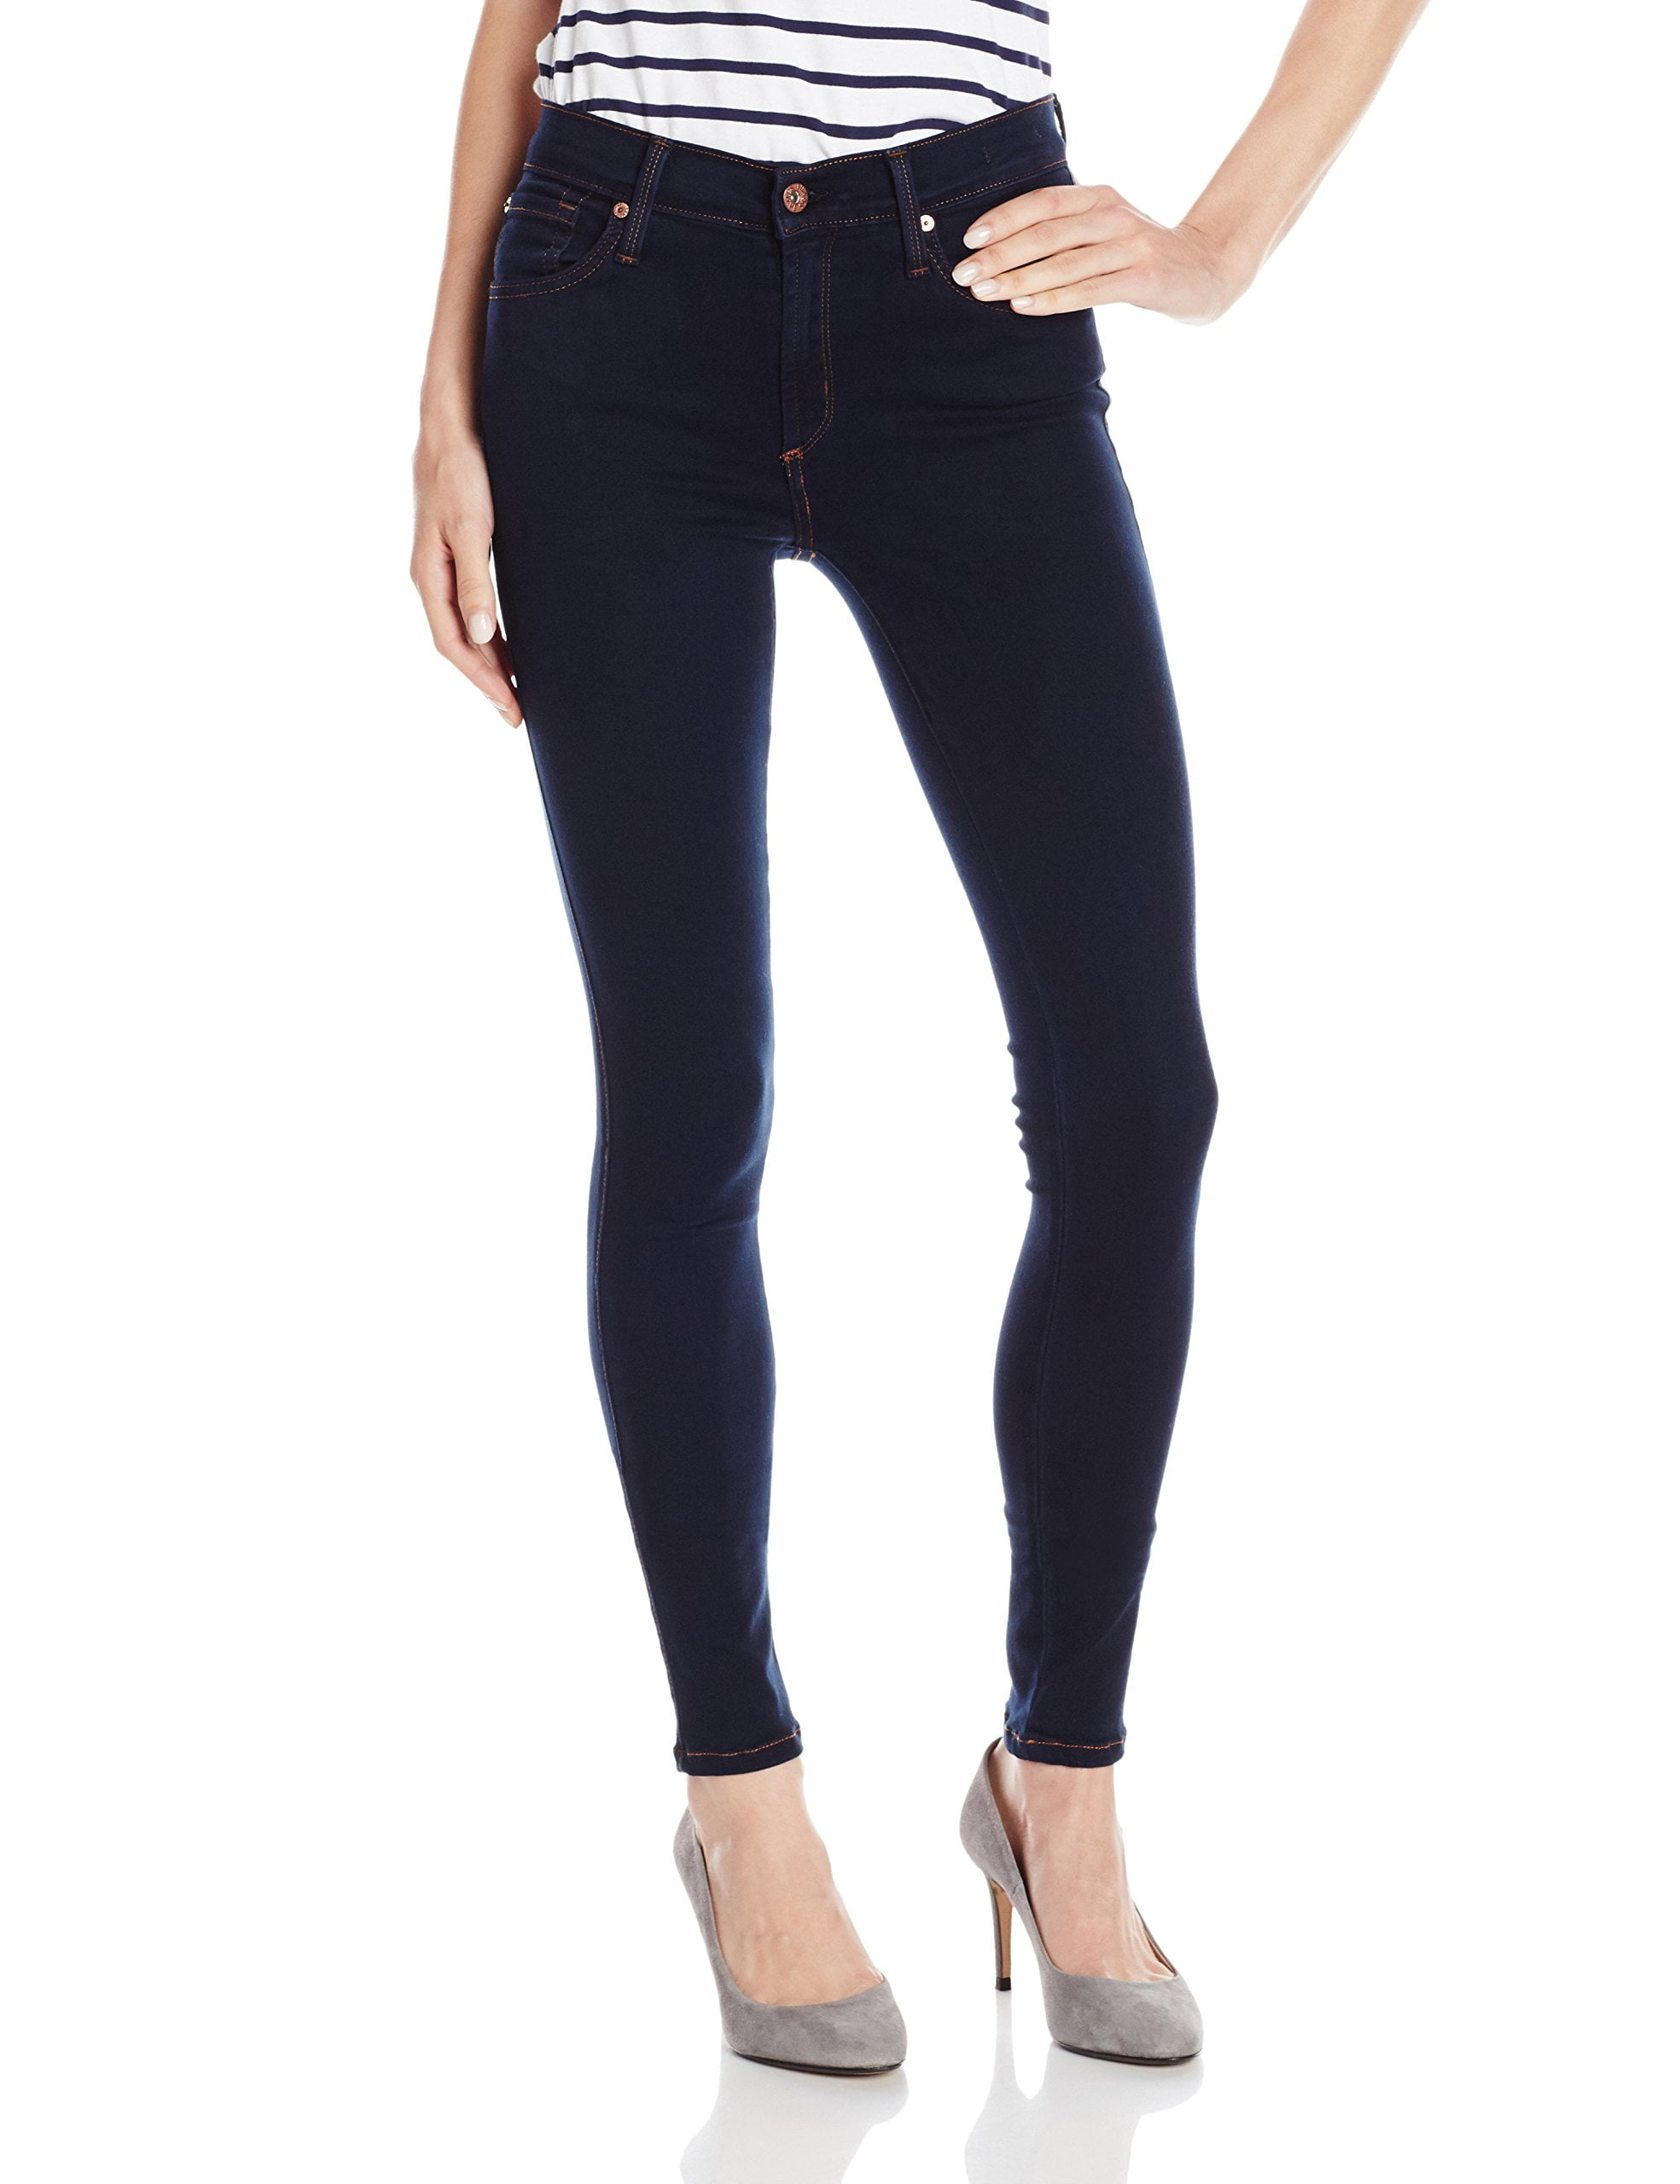 James Jeans - Womens Jeans Dark Wash 30x31 Skinny Stretch 30 - Walmart ...